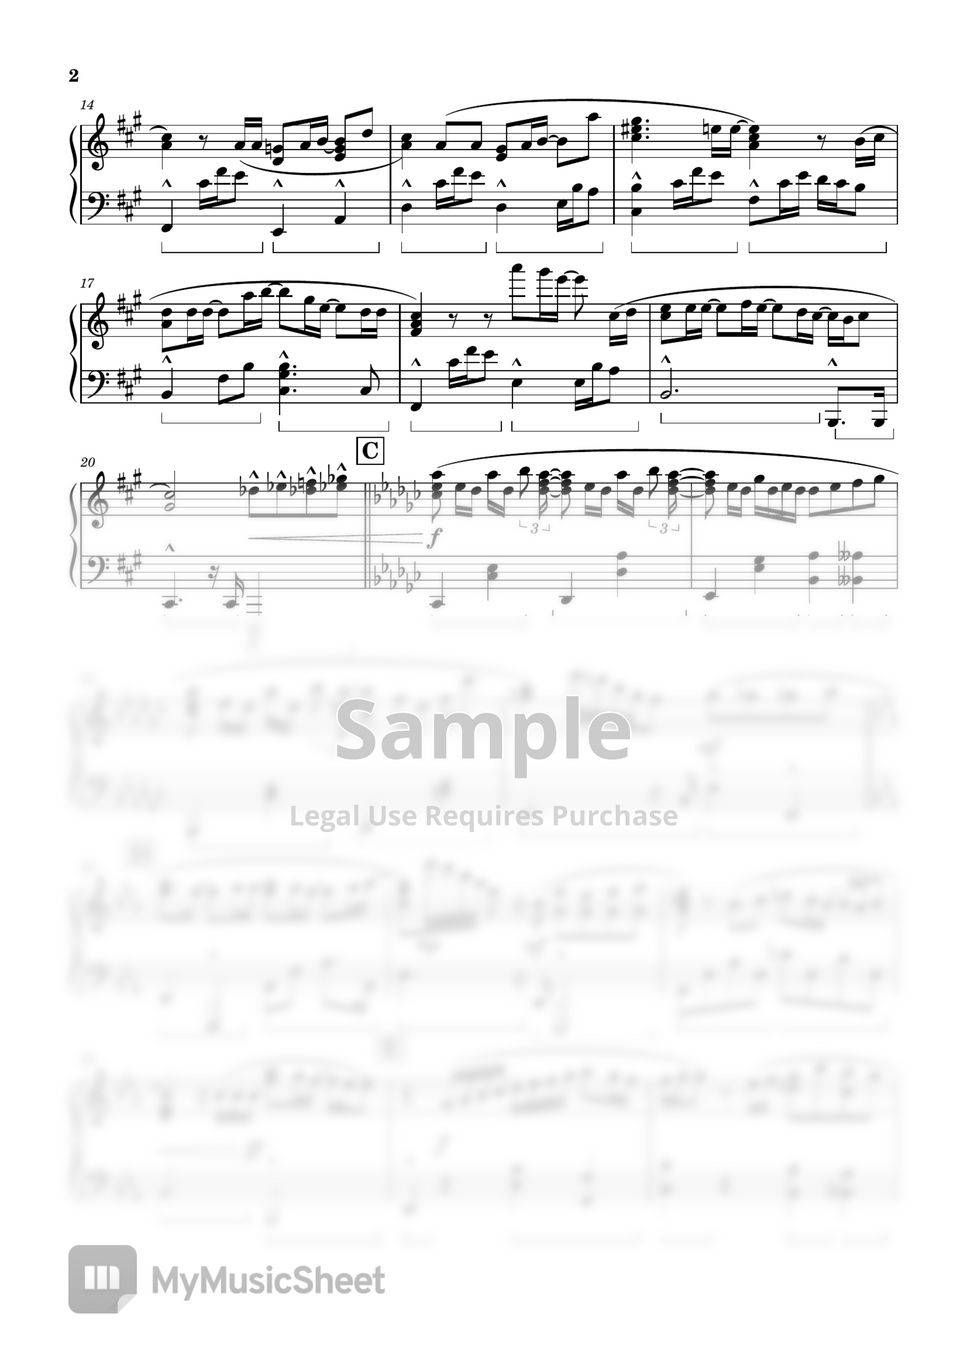 Guardian Battle Theme Sheet music for Piano (Solo)